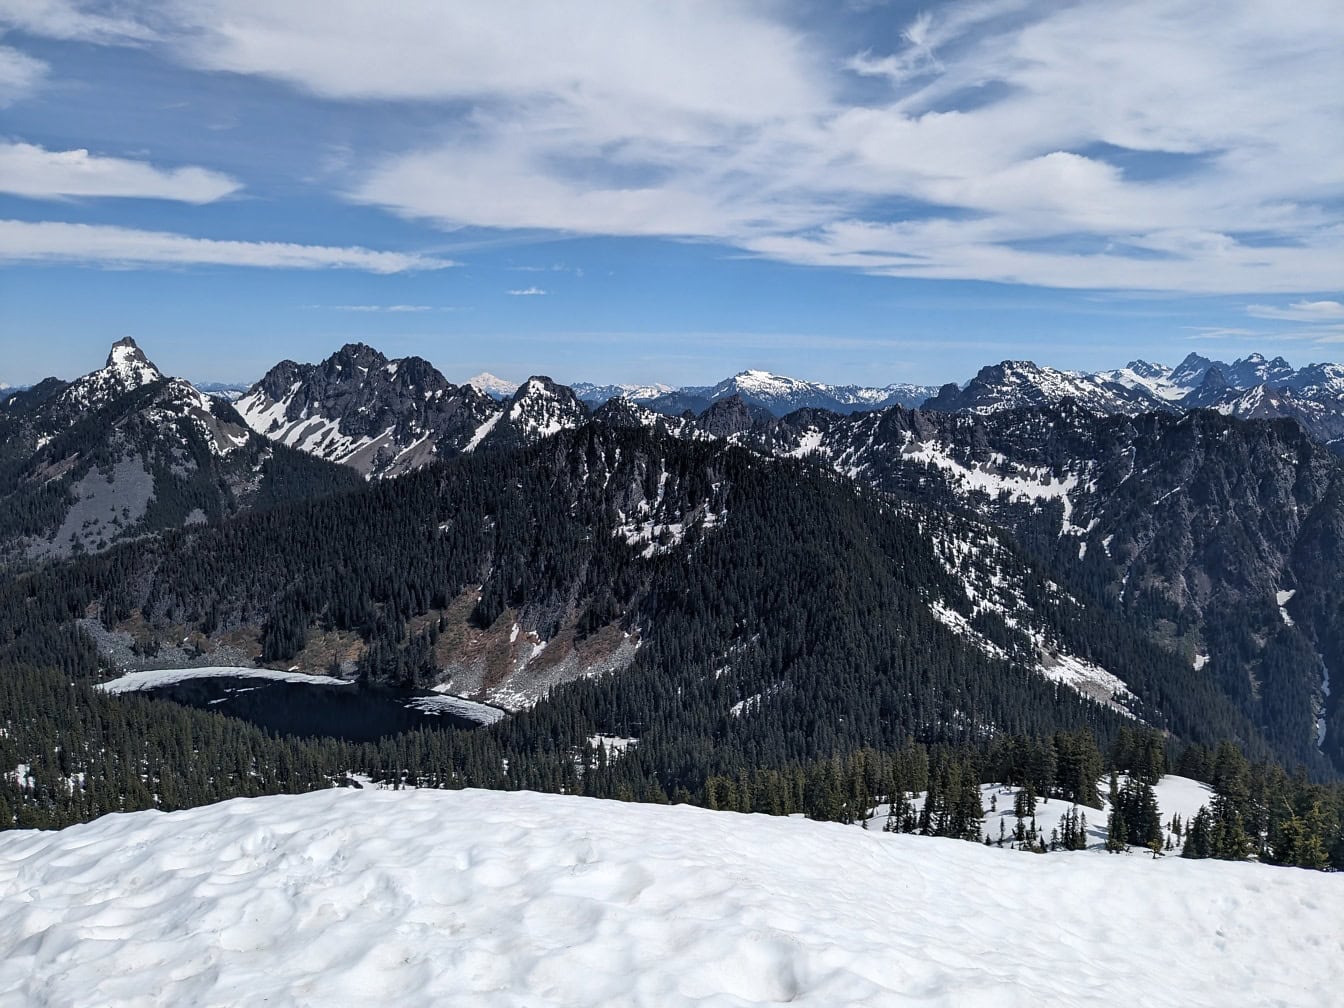 Vista da montanha de granito em Washington com picos nevados e com árvores e um lago